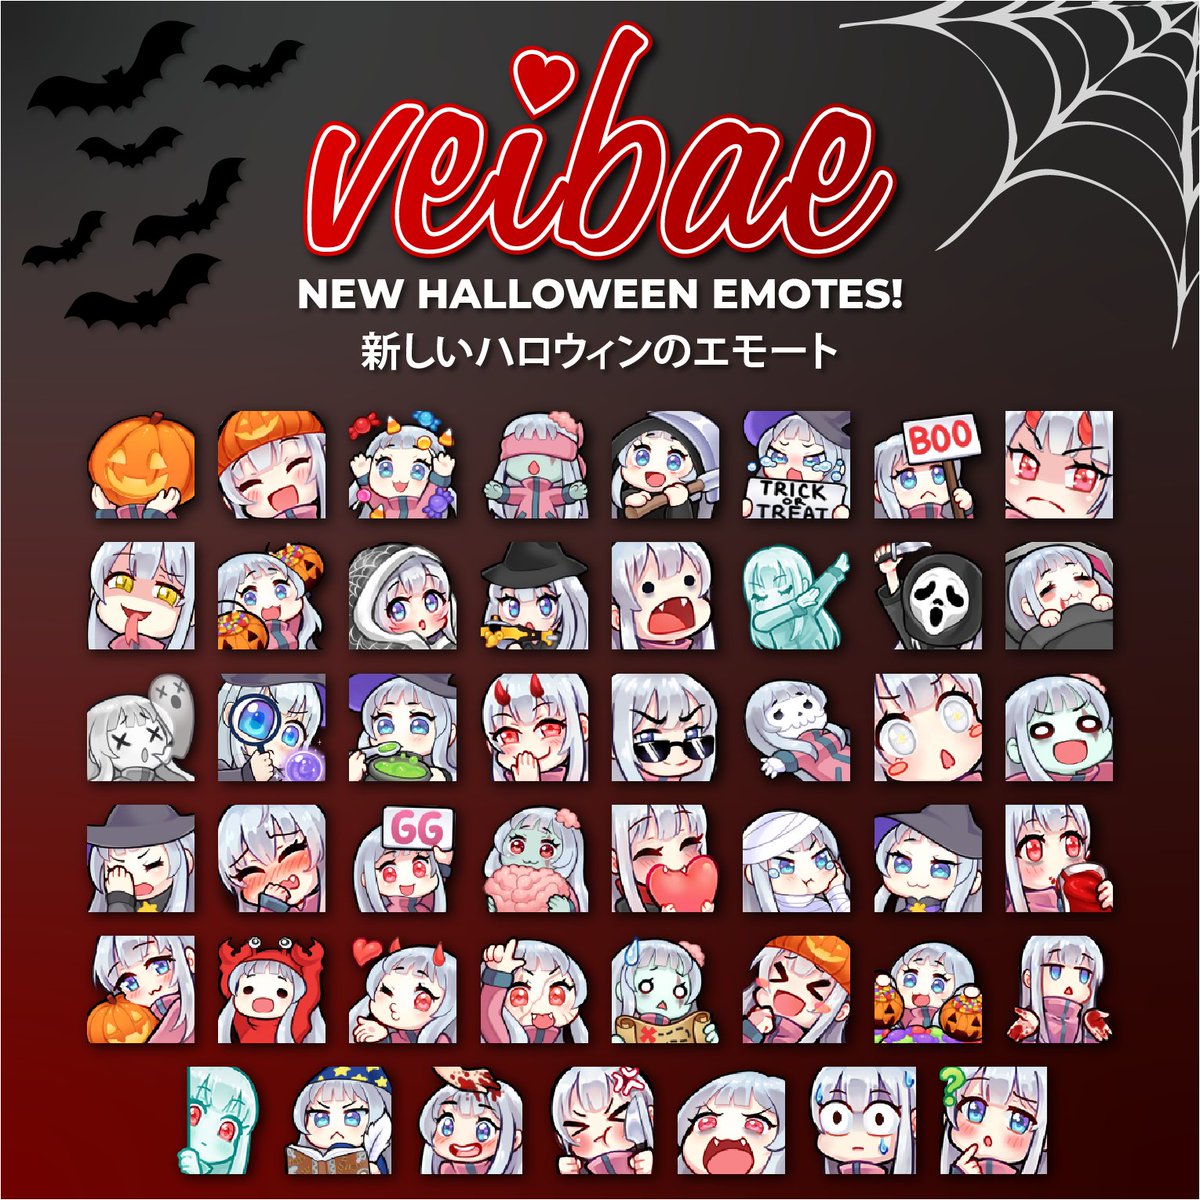 Vei Vshojo Updated Halloween Emotes For All Of October I Hope You All Enjoy The Spooks W 10月の全期間に私のtwitchチャンネルにアップされるハロウィンの全エモートを紹介するね 私達はdiscordでの幾つかのホラームービーナイトも計画してるよ